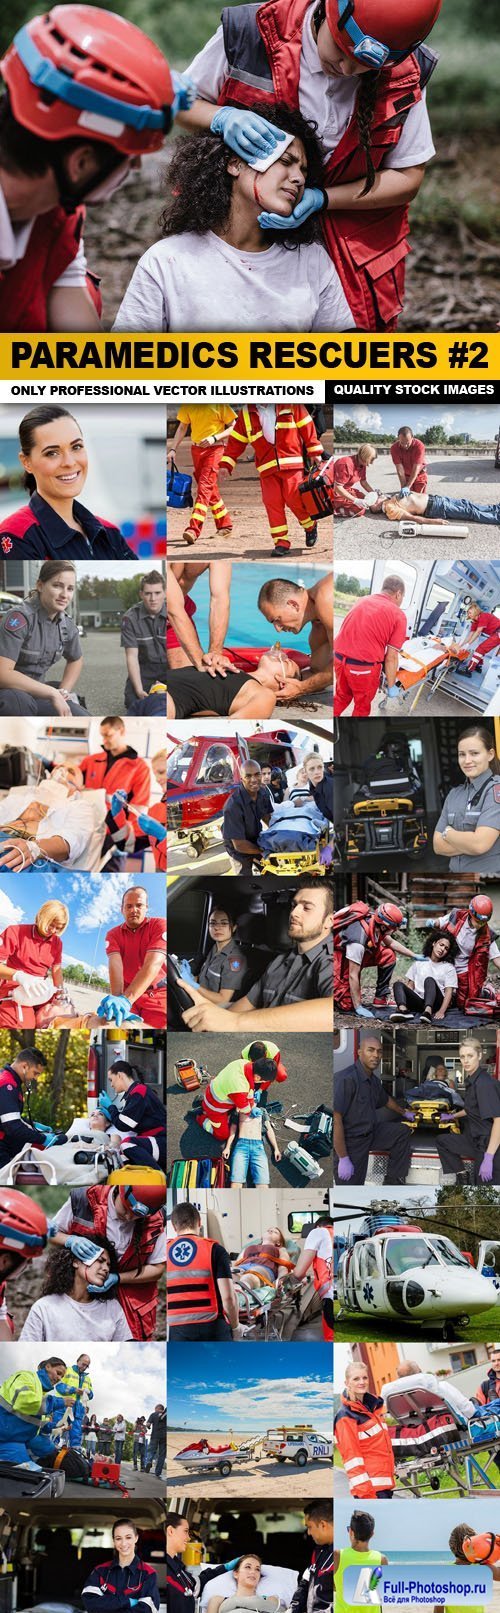 Paramedics Rescuers #2 - 25 HQ Images